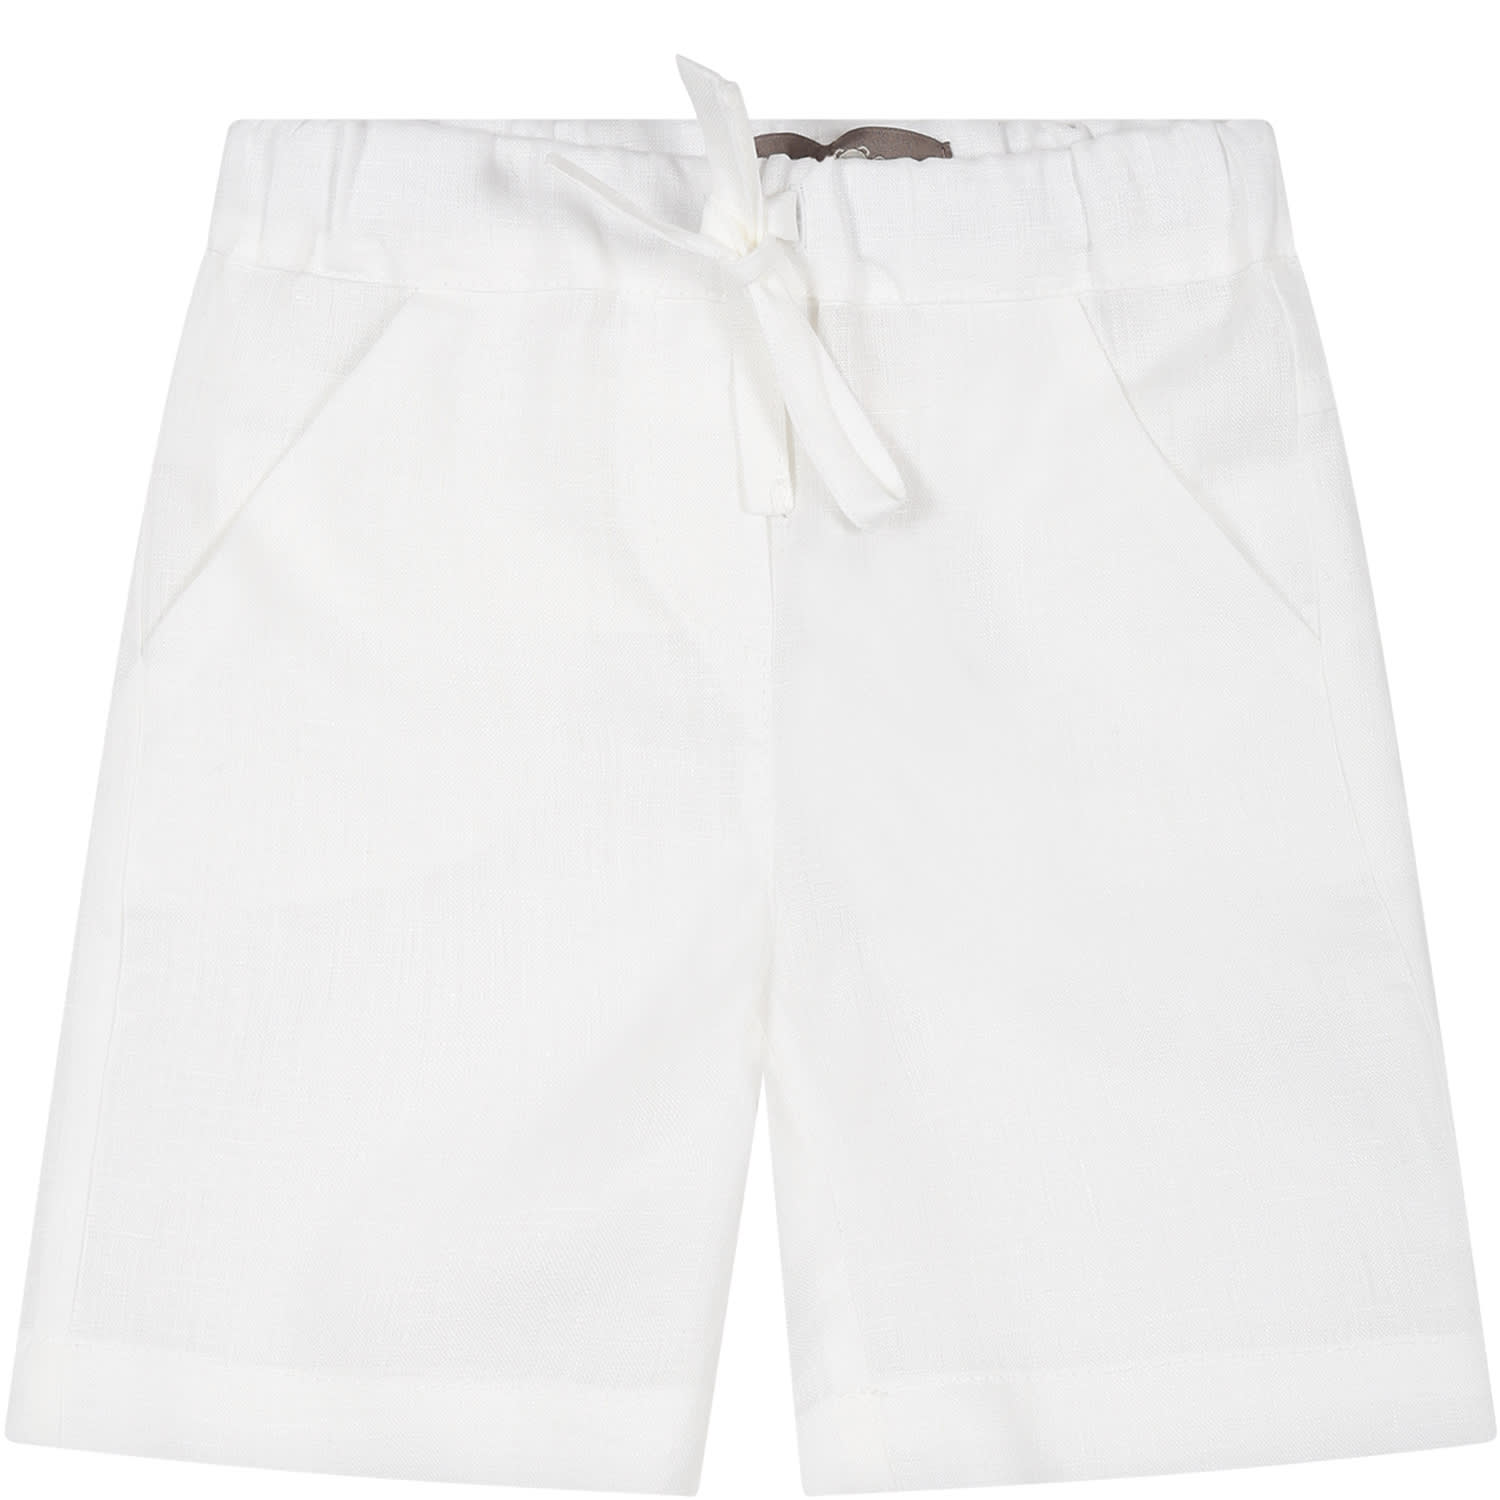 Little Bear Kids' White Shorts For Baby Boy